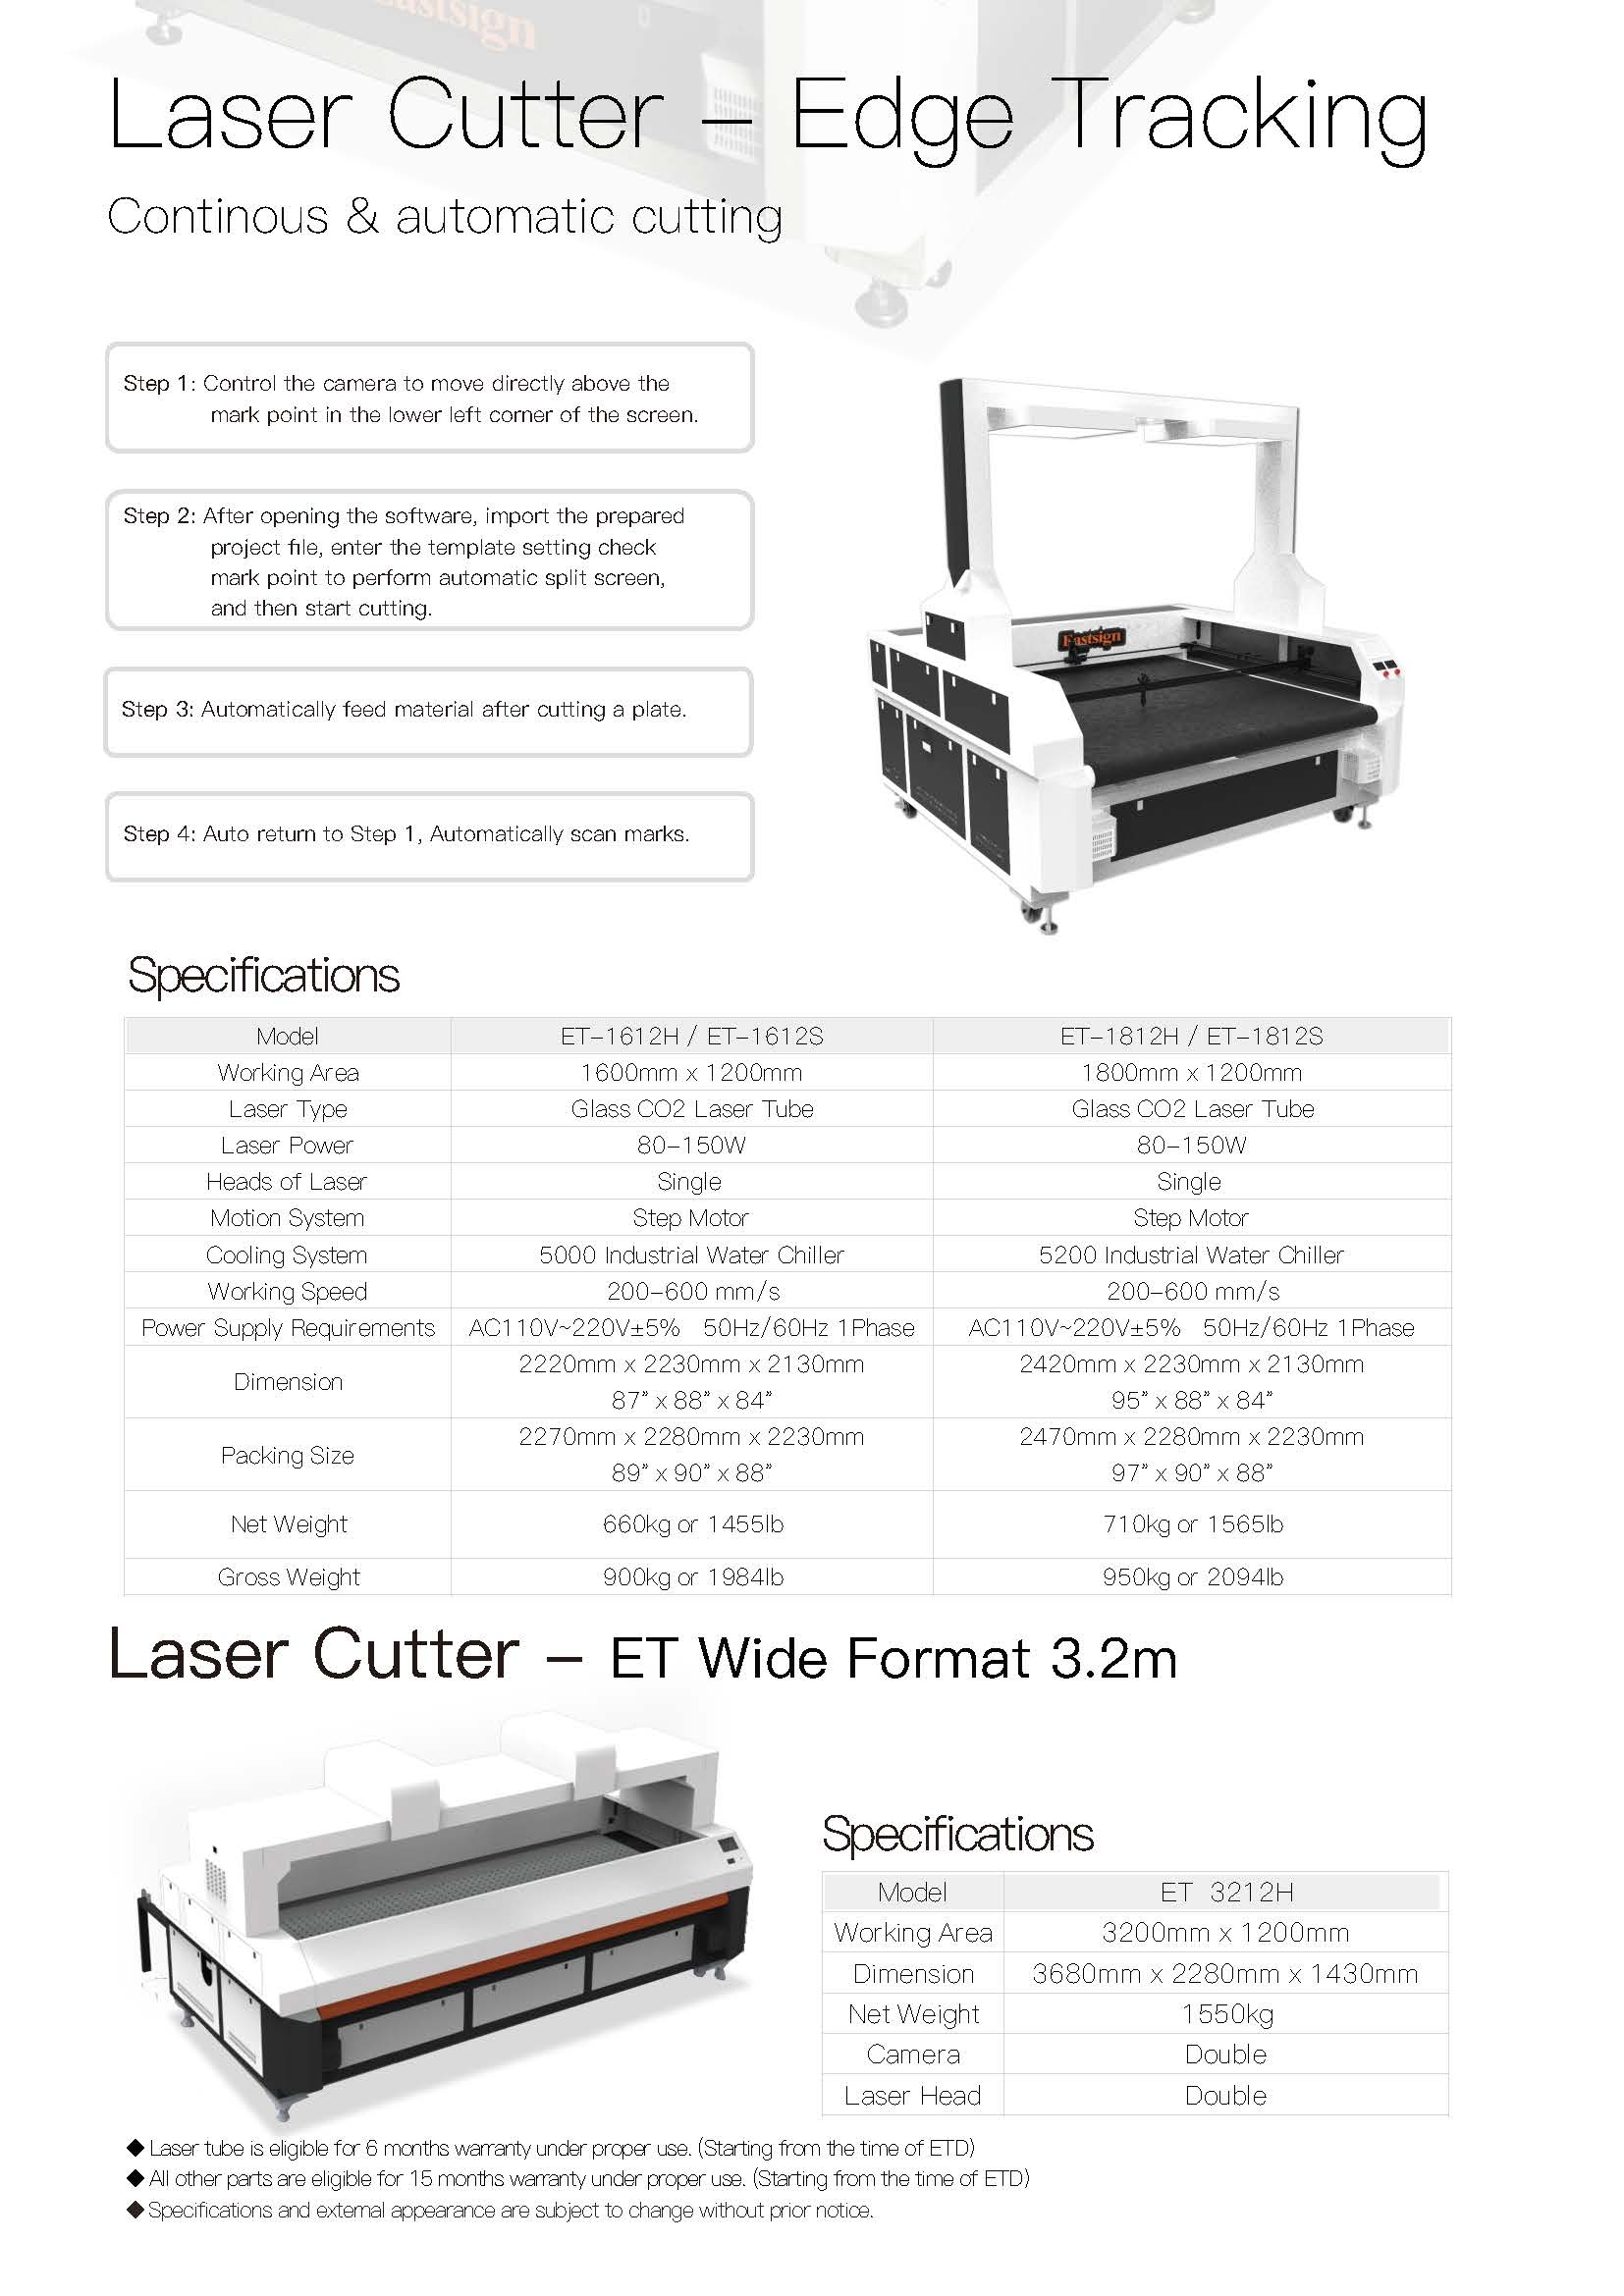 Laser Cutter - ET Series